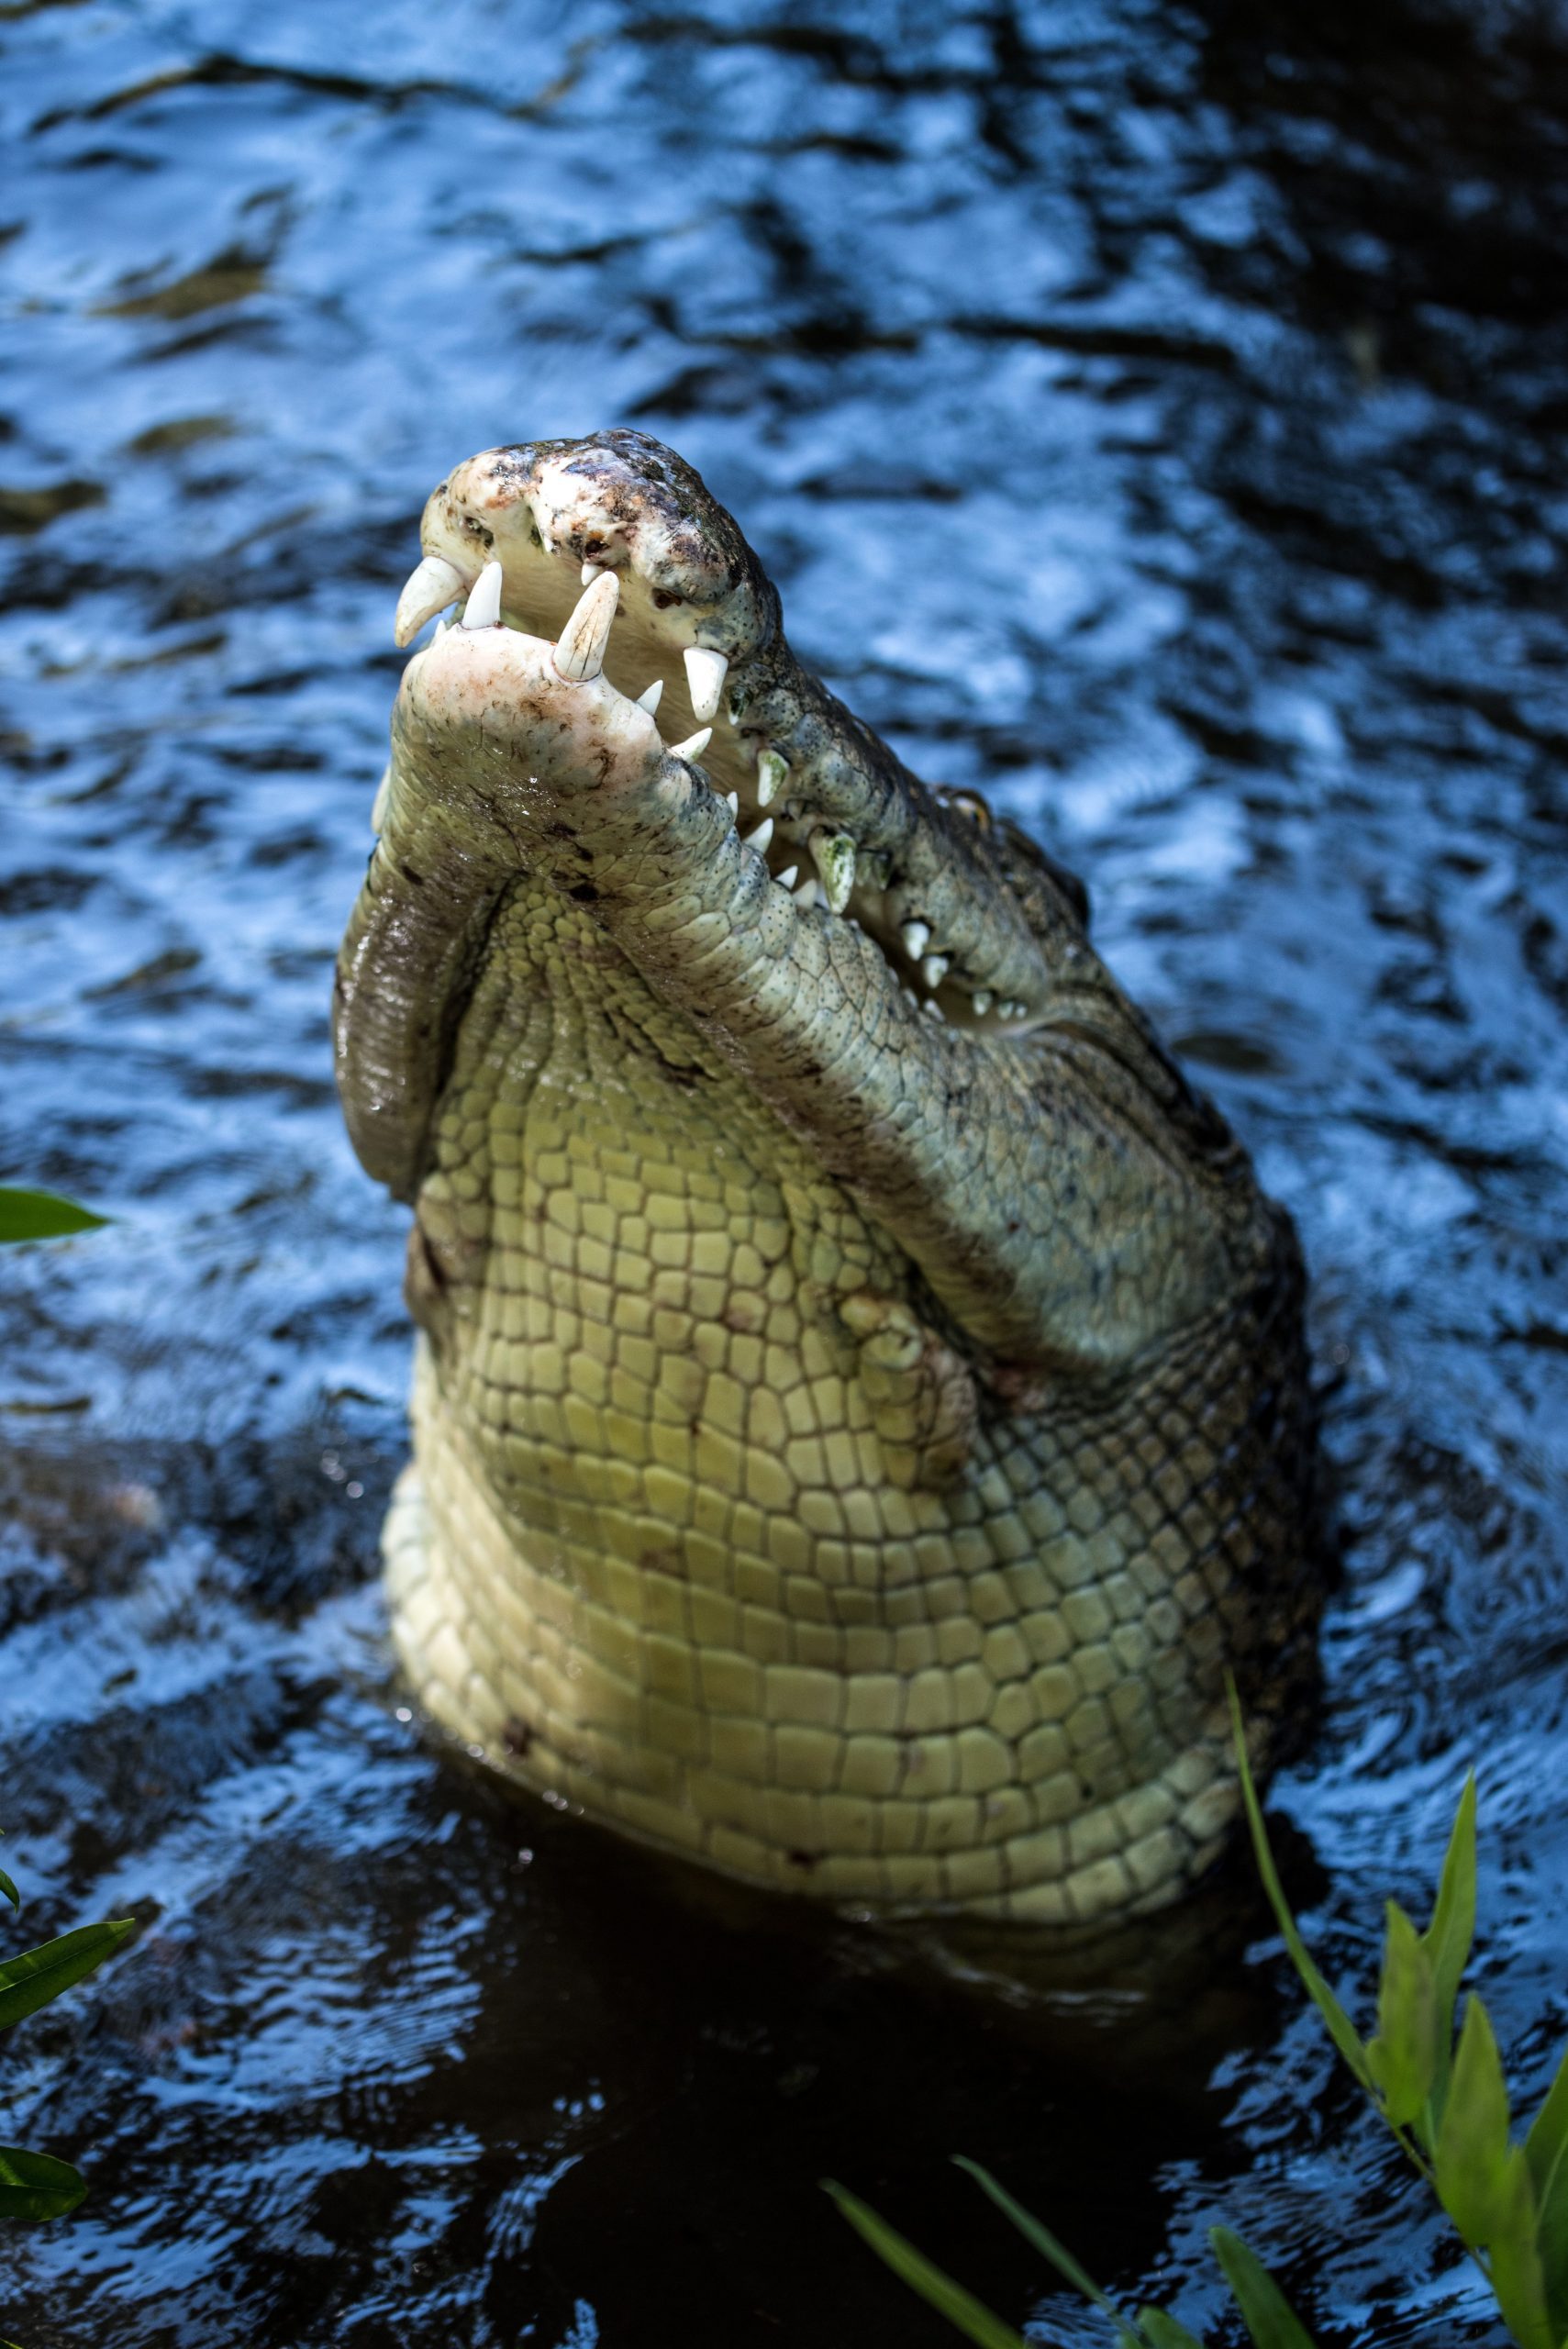 Can I Feed Crocodiles in Darwin?